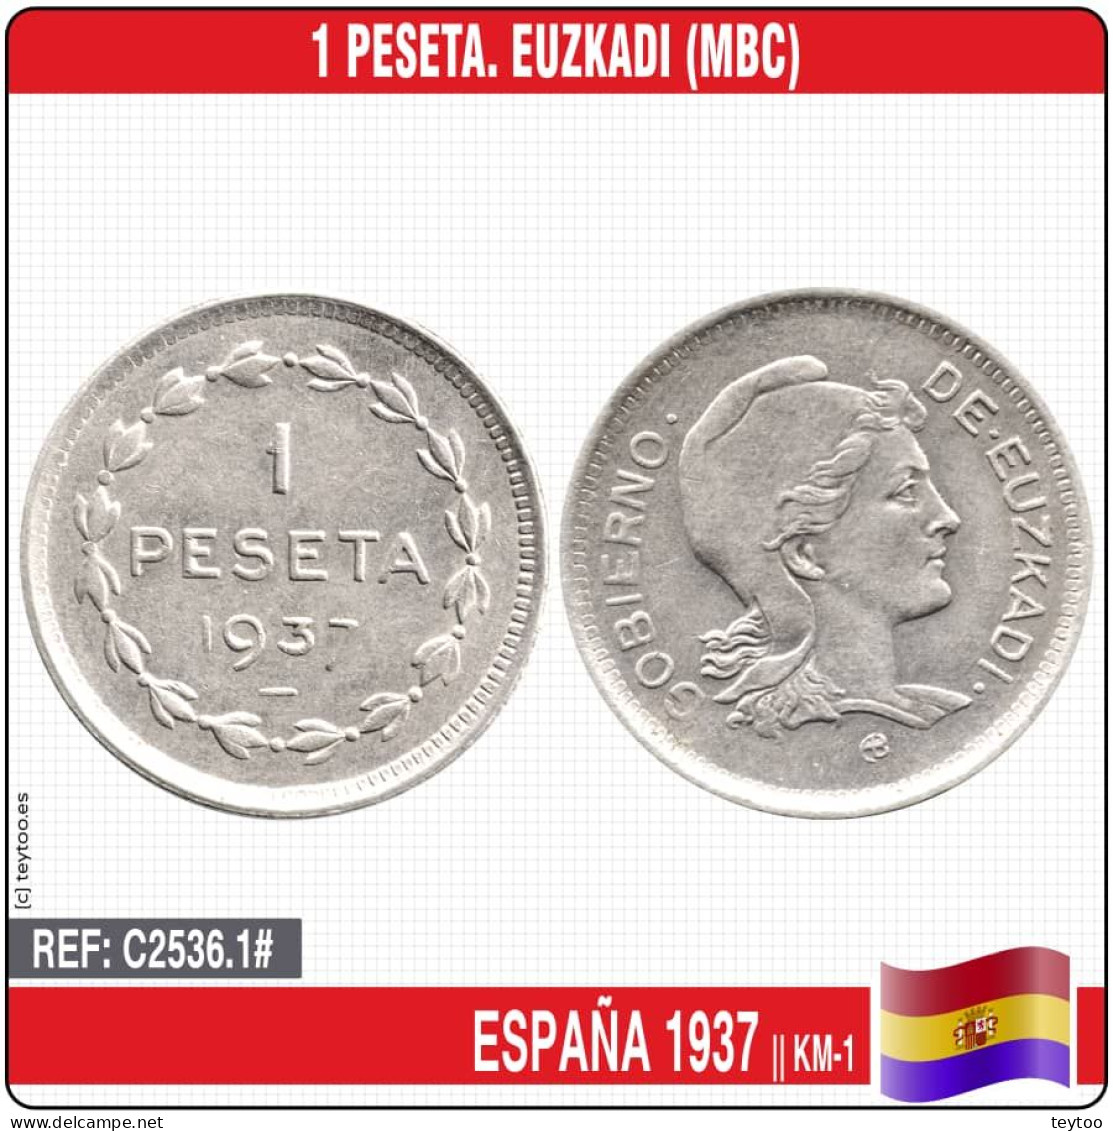 C2536.1# España 1937. 1 Peseta. Euzkadi (MBC) KM-1 - Zona Repubblicana